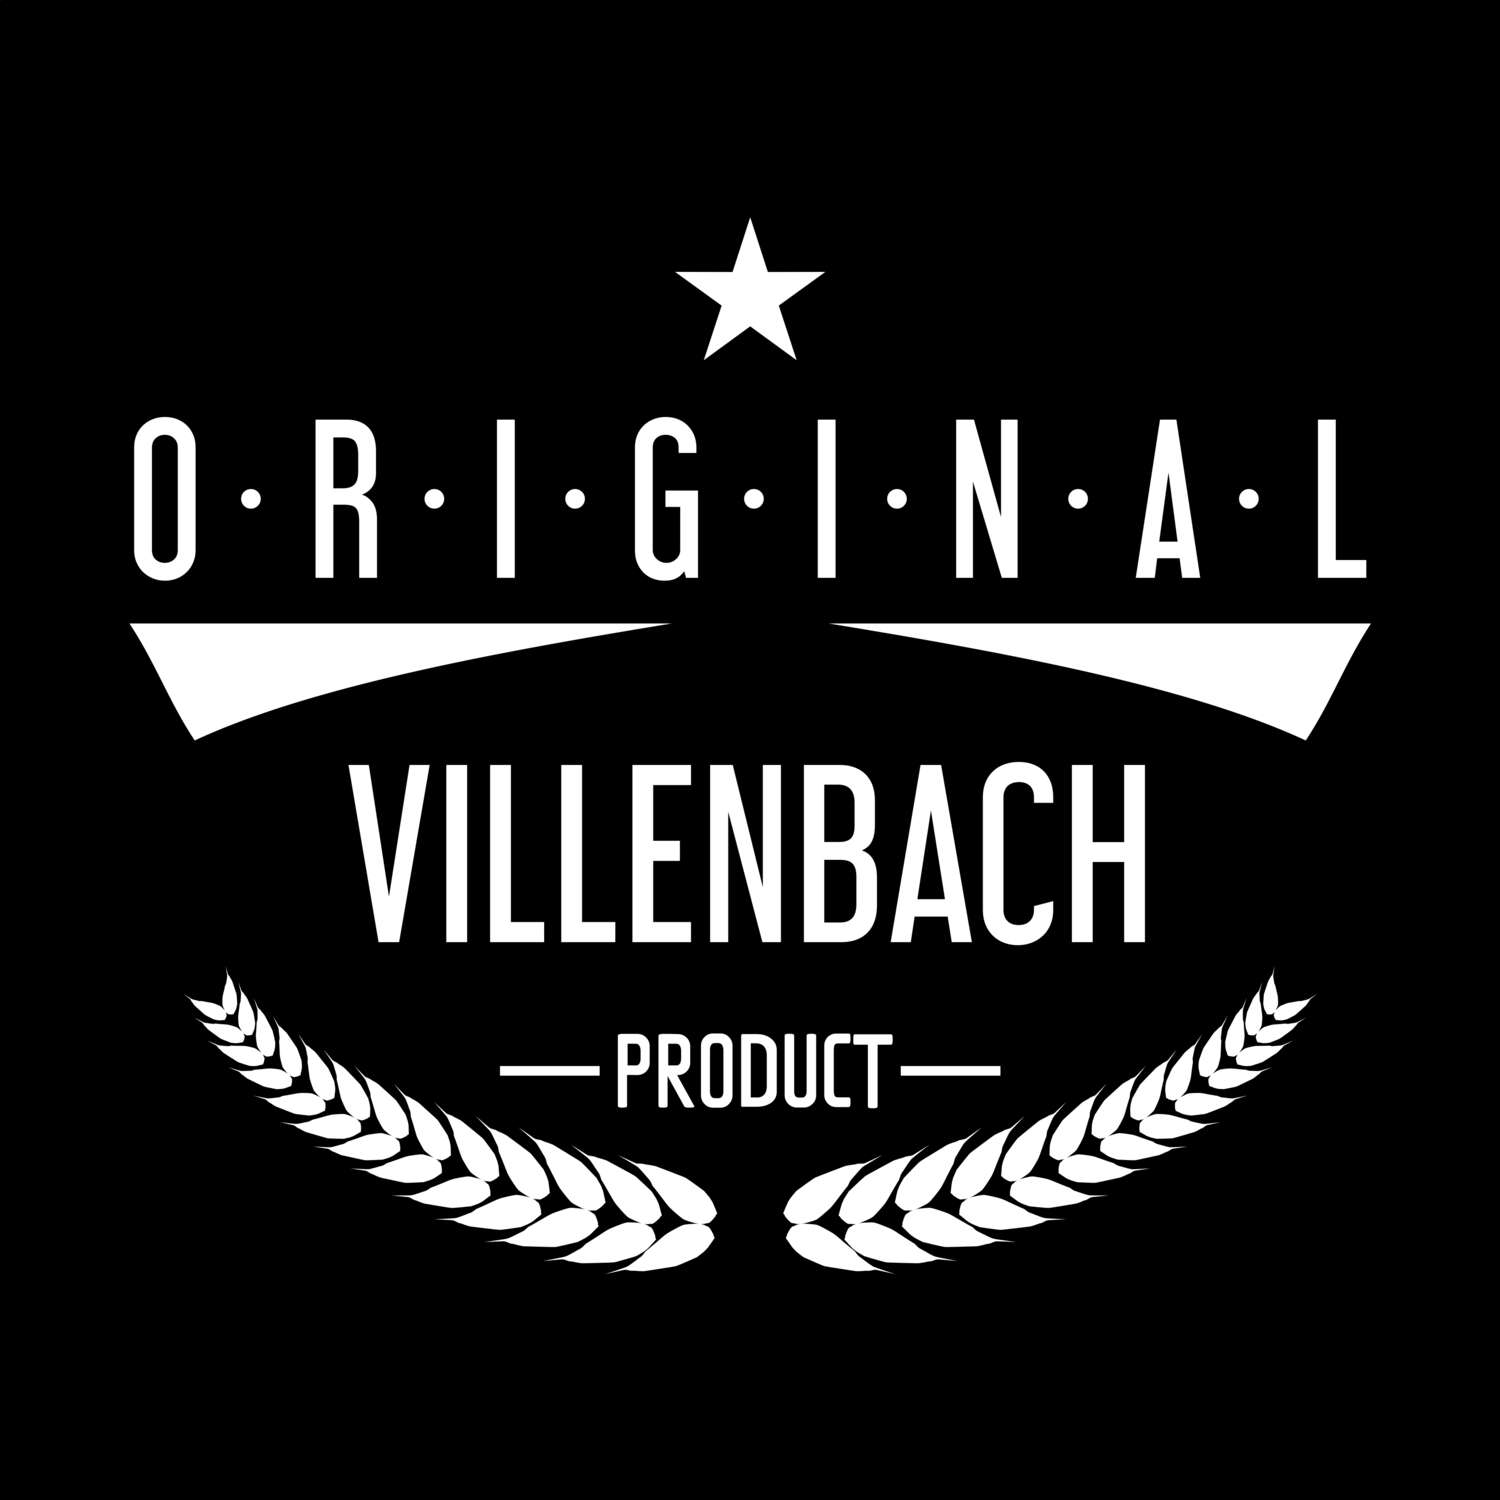 Villenbach T-Shirt »Original Product«